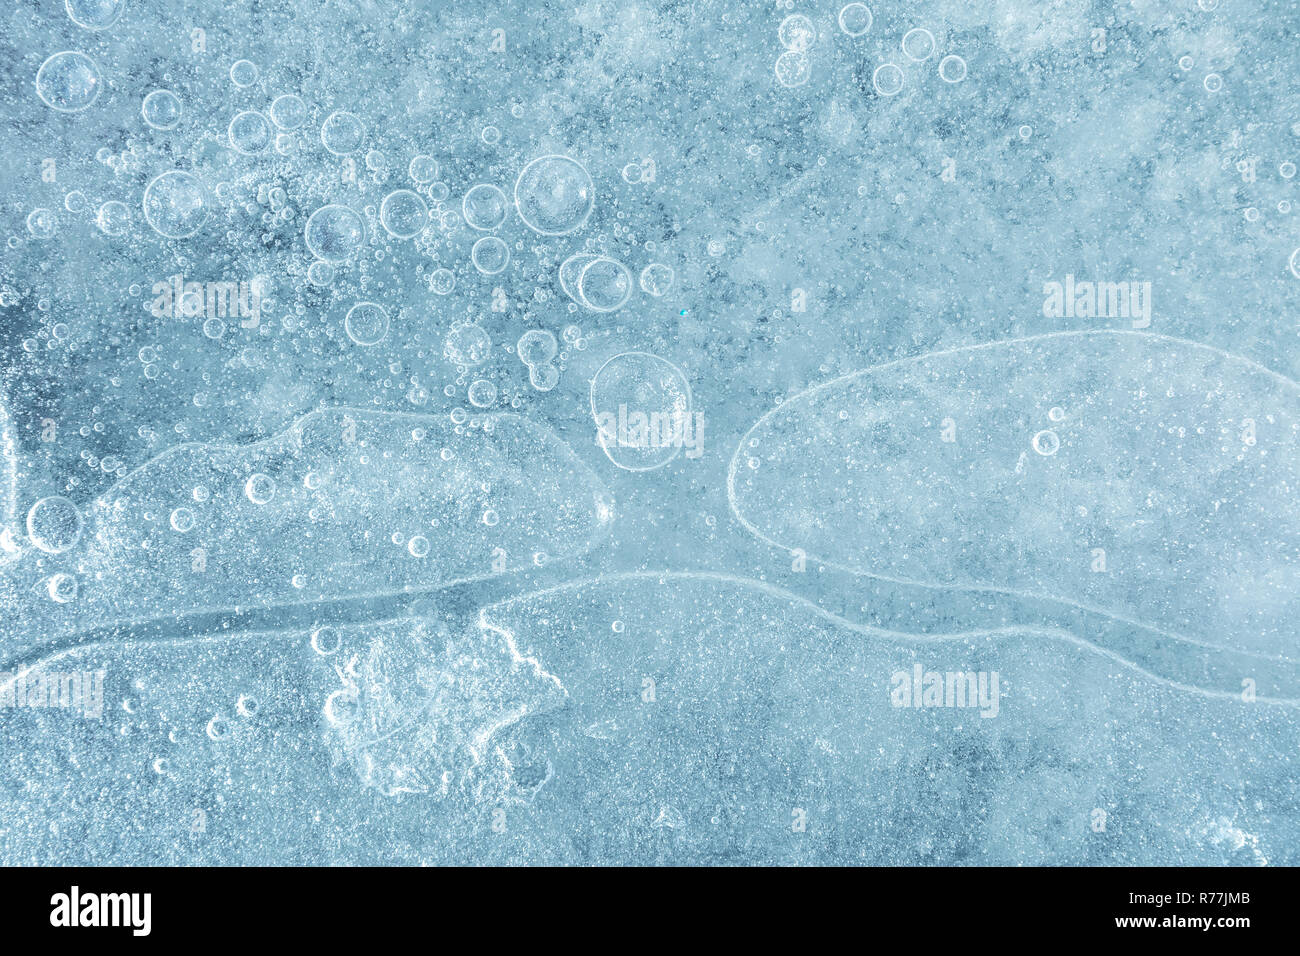 Zugefrorenen Fluss Wasser mit Luftblasen unter Eisblock, winter Textur Hintergrund Stockfoto